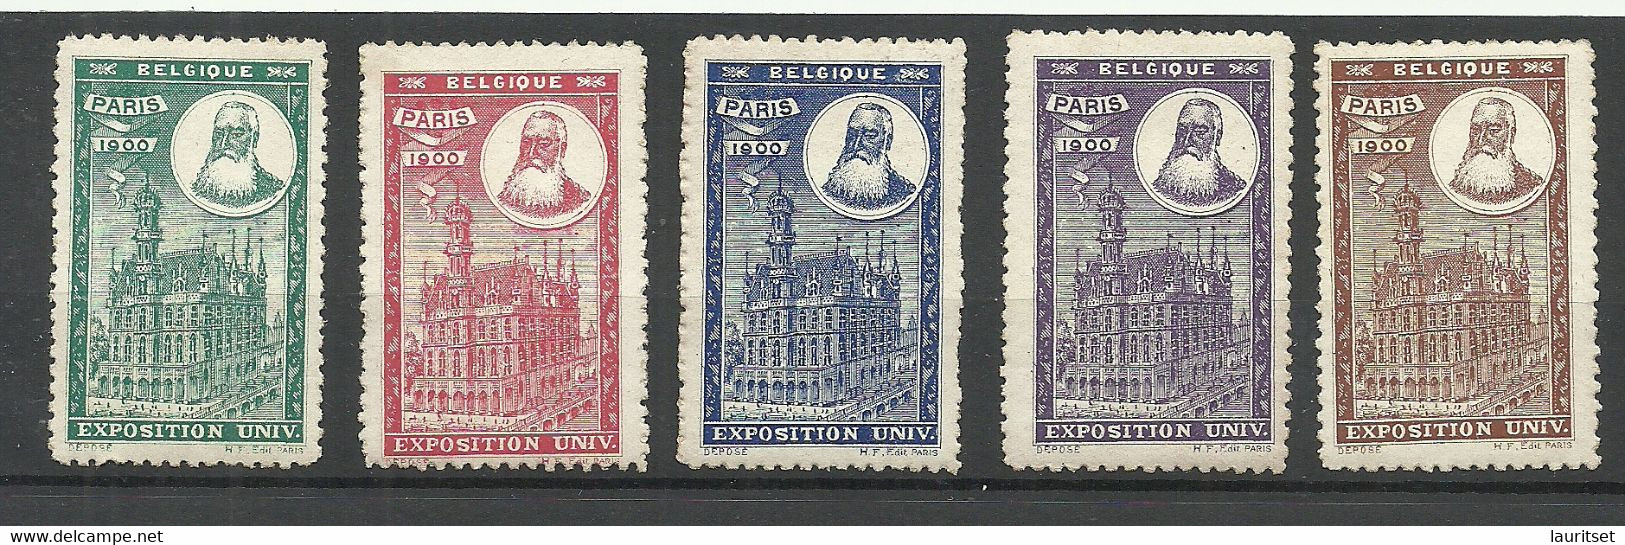 France 1900 EXPOSITION UNIVERSELLE Vignetten Poster Stamps Pavillon De Belgique Belgium * - 1900 – Paris (France)